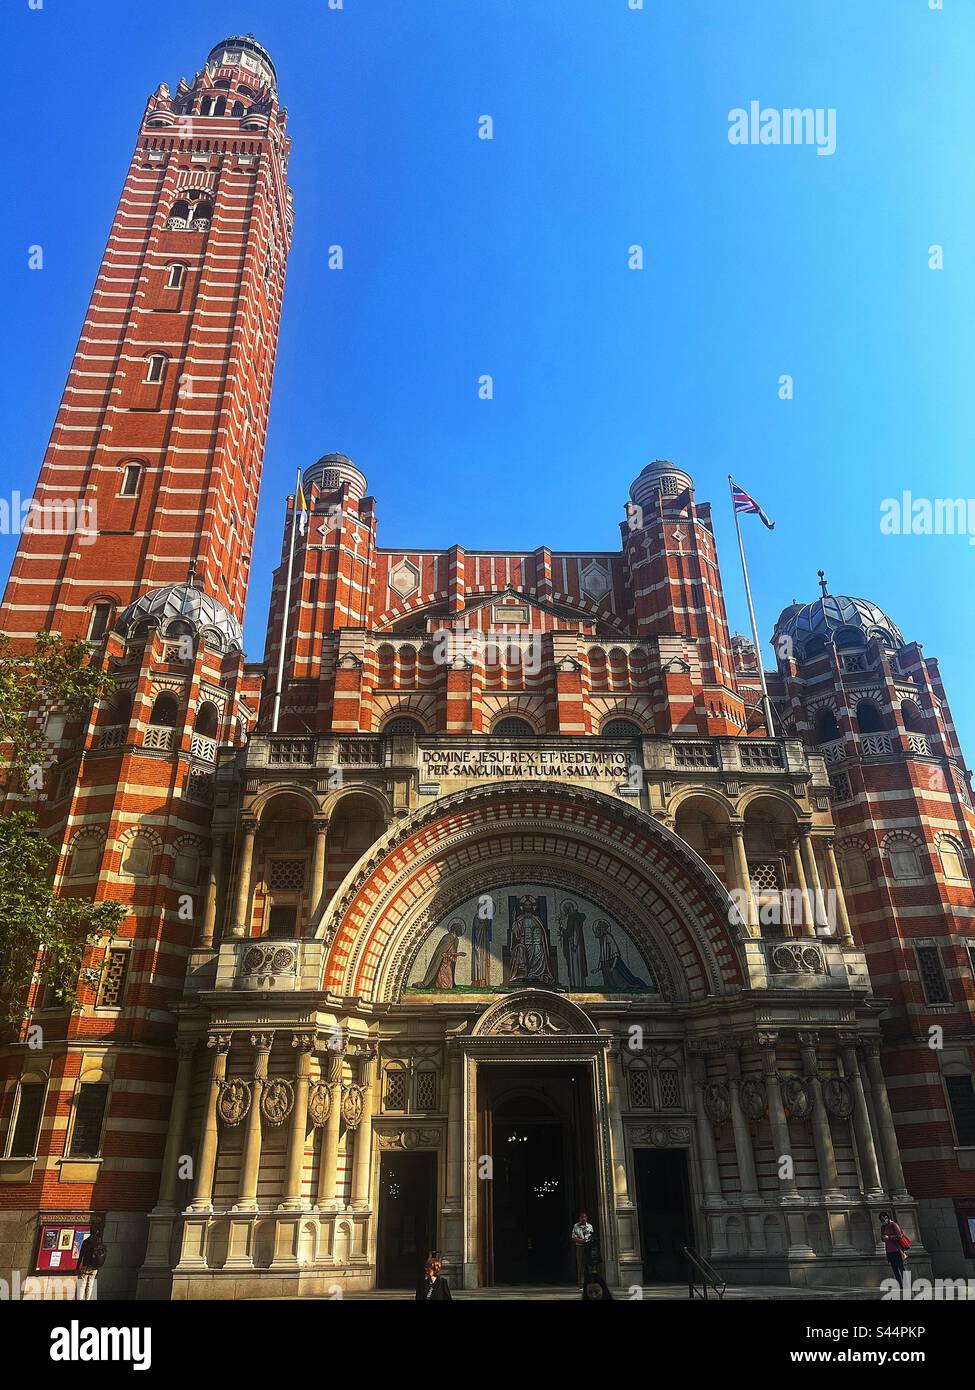 La cathédrale catholique romaine de Westminster construite en brique à Victoria, Londres, SW1 conçue par John Francis Bentley dans le style néo-byzantin est considérée comme l'un des plus grands bâtiments d'église au monde. Banque D'Images